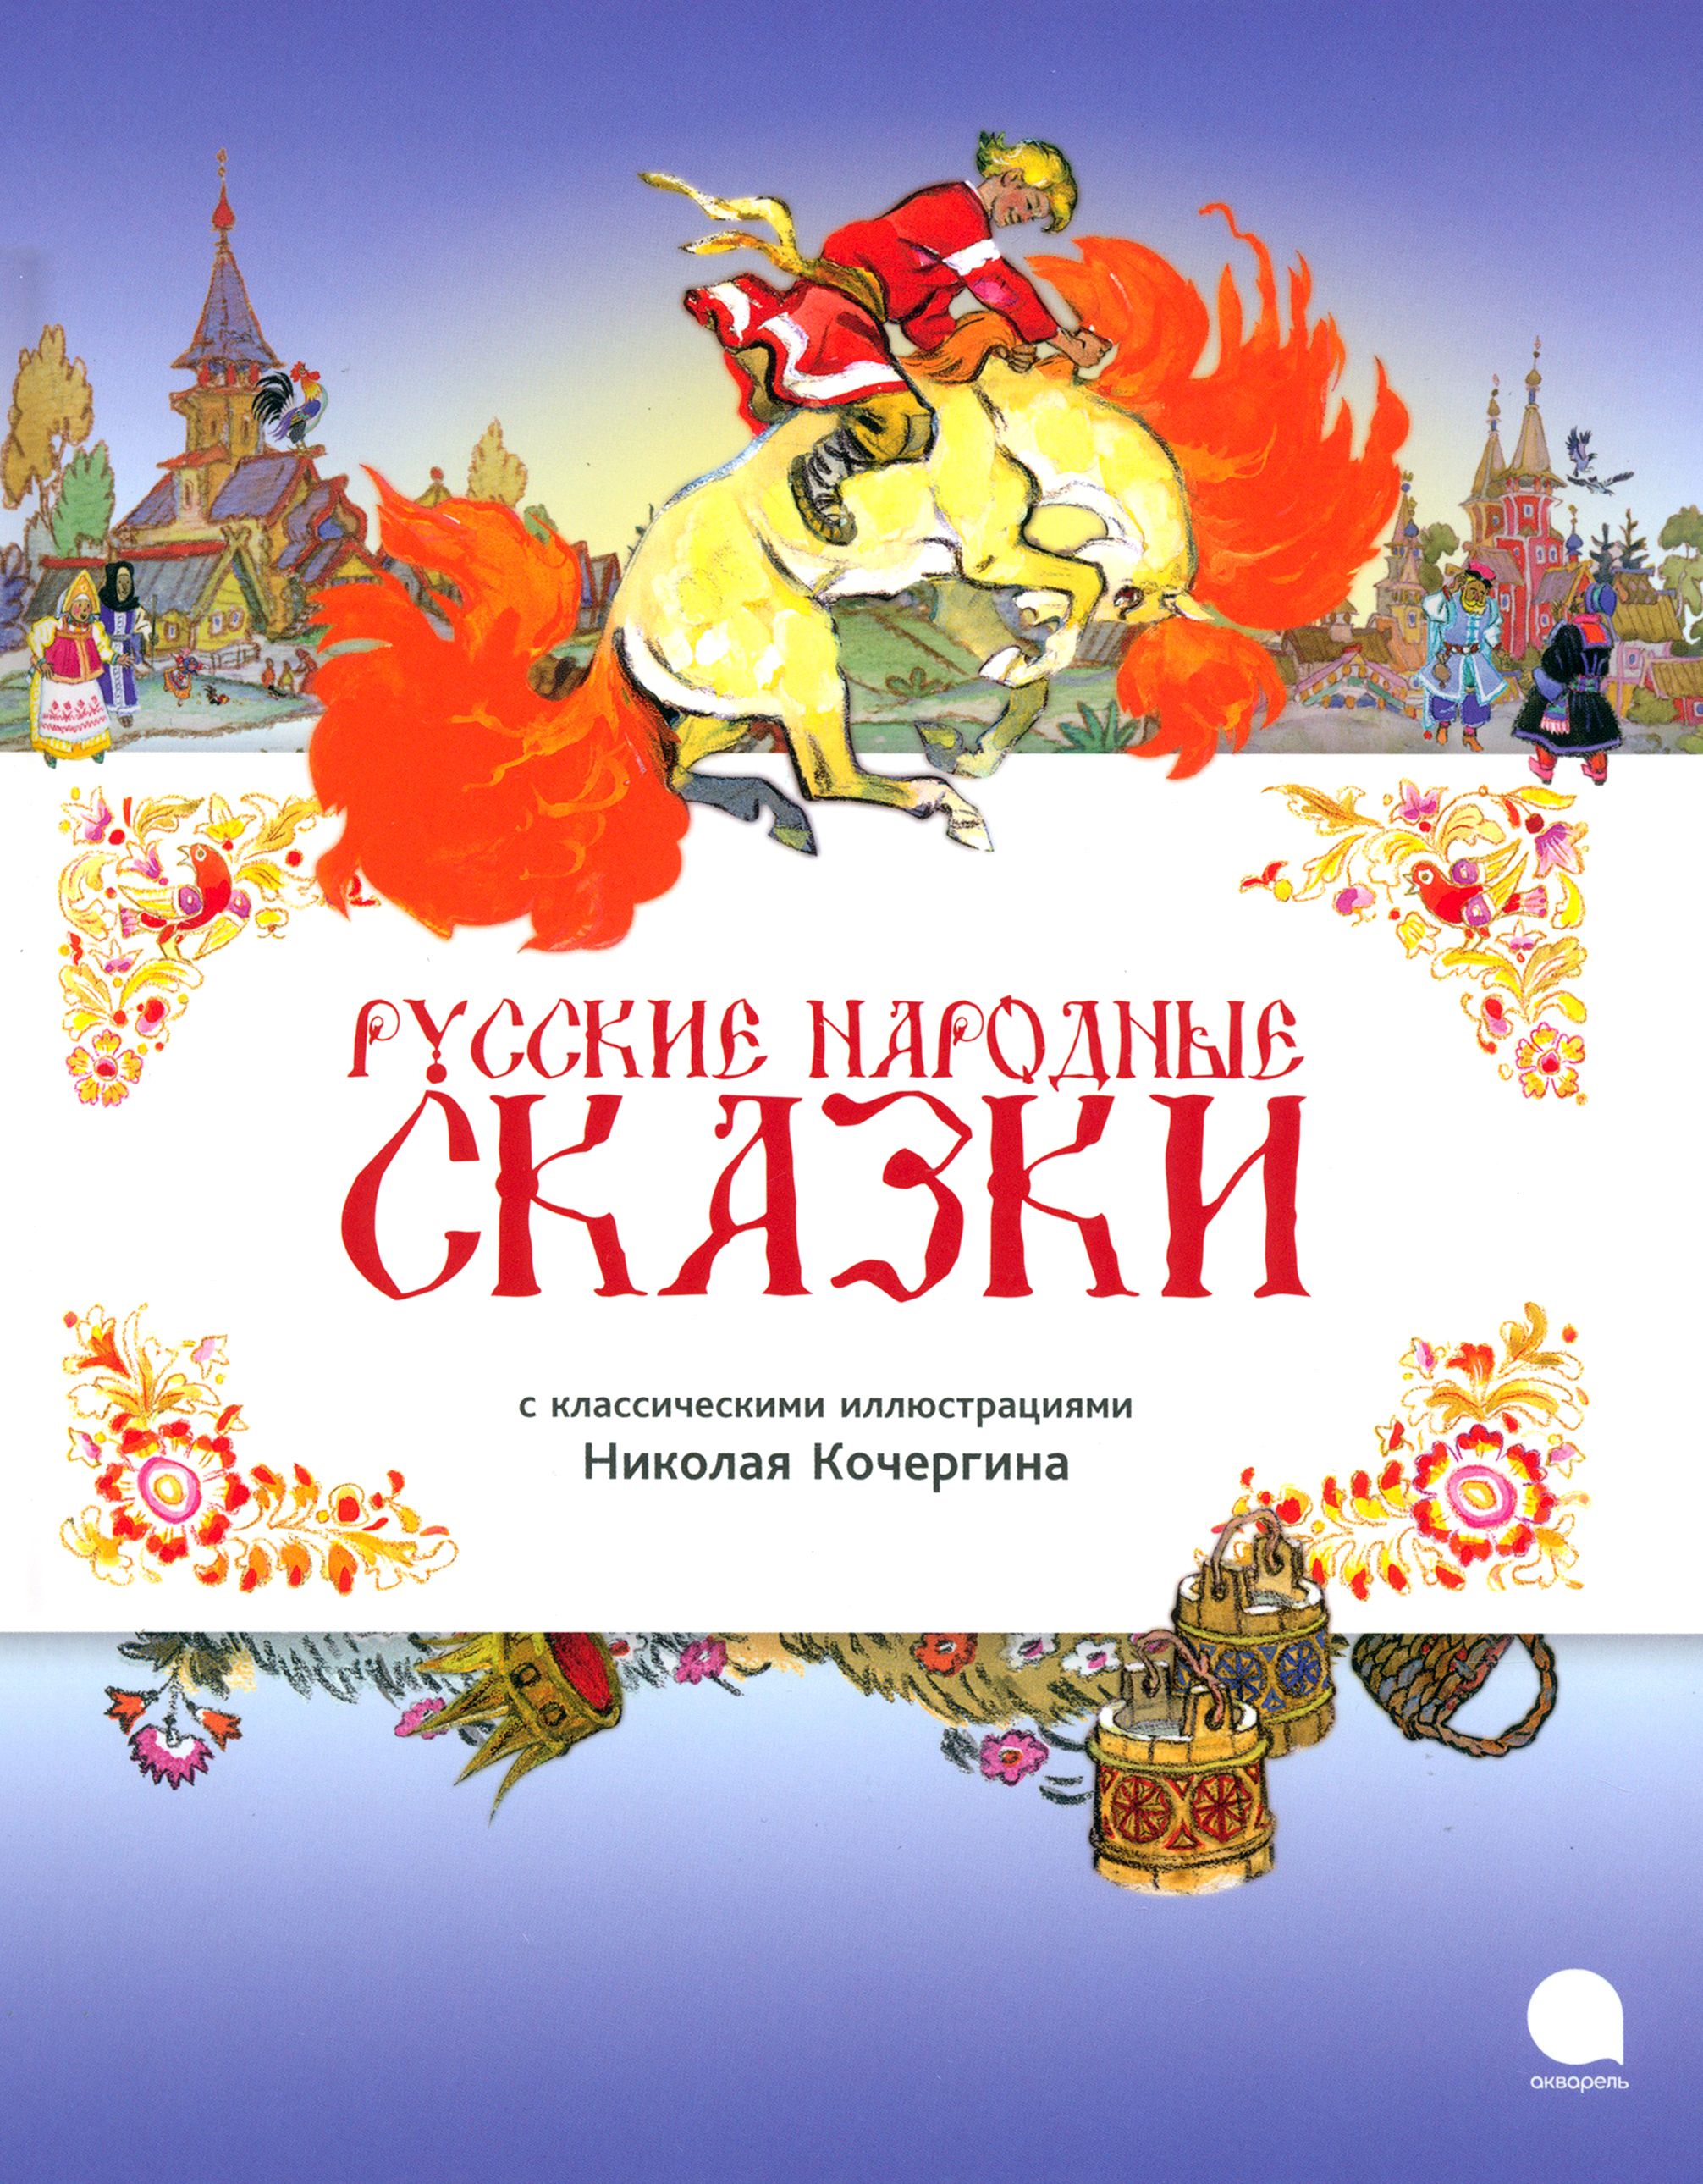 Книга про русские народные сказки